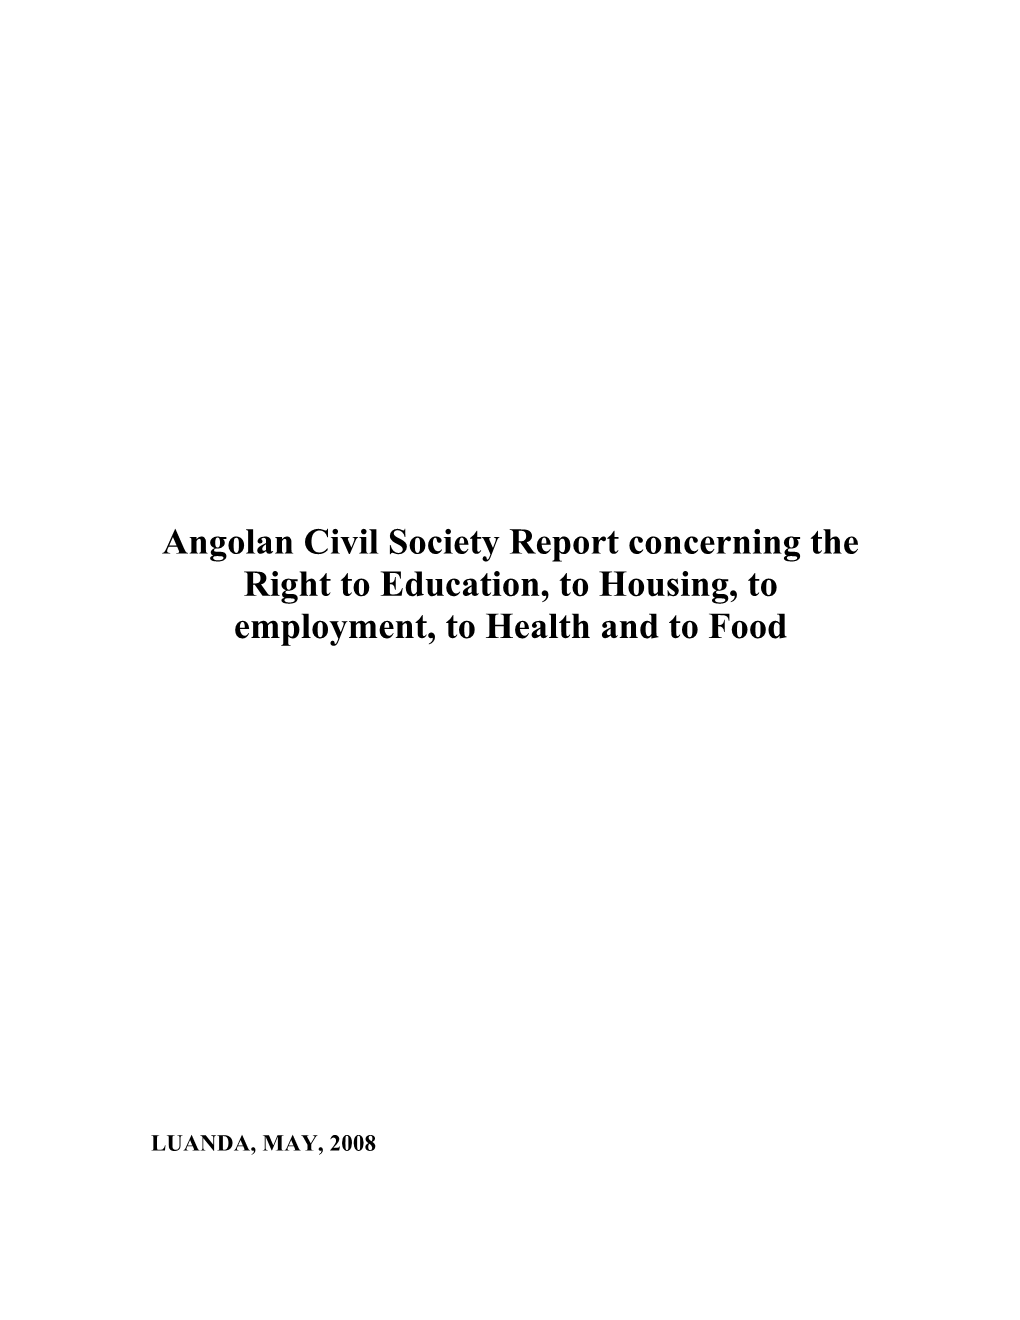 Relatório Da Sociedade Civil Angolana Sobre O Direito À Educação, À Habitação, Ao Emprego